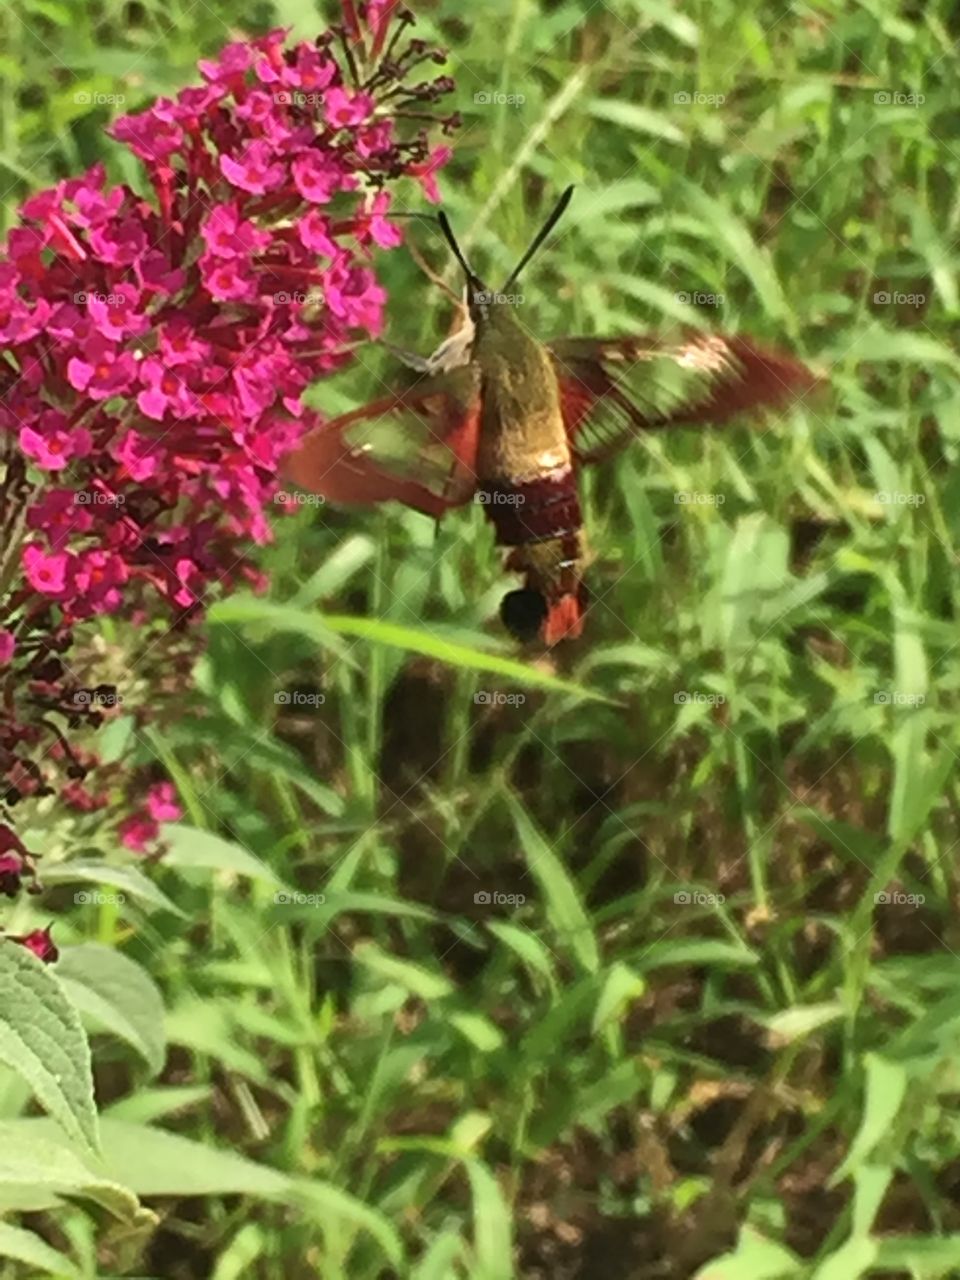 Hummingbird Hawk-Moth in flight